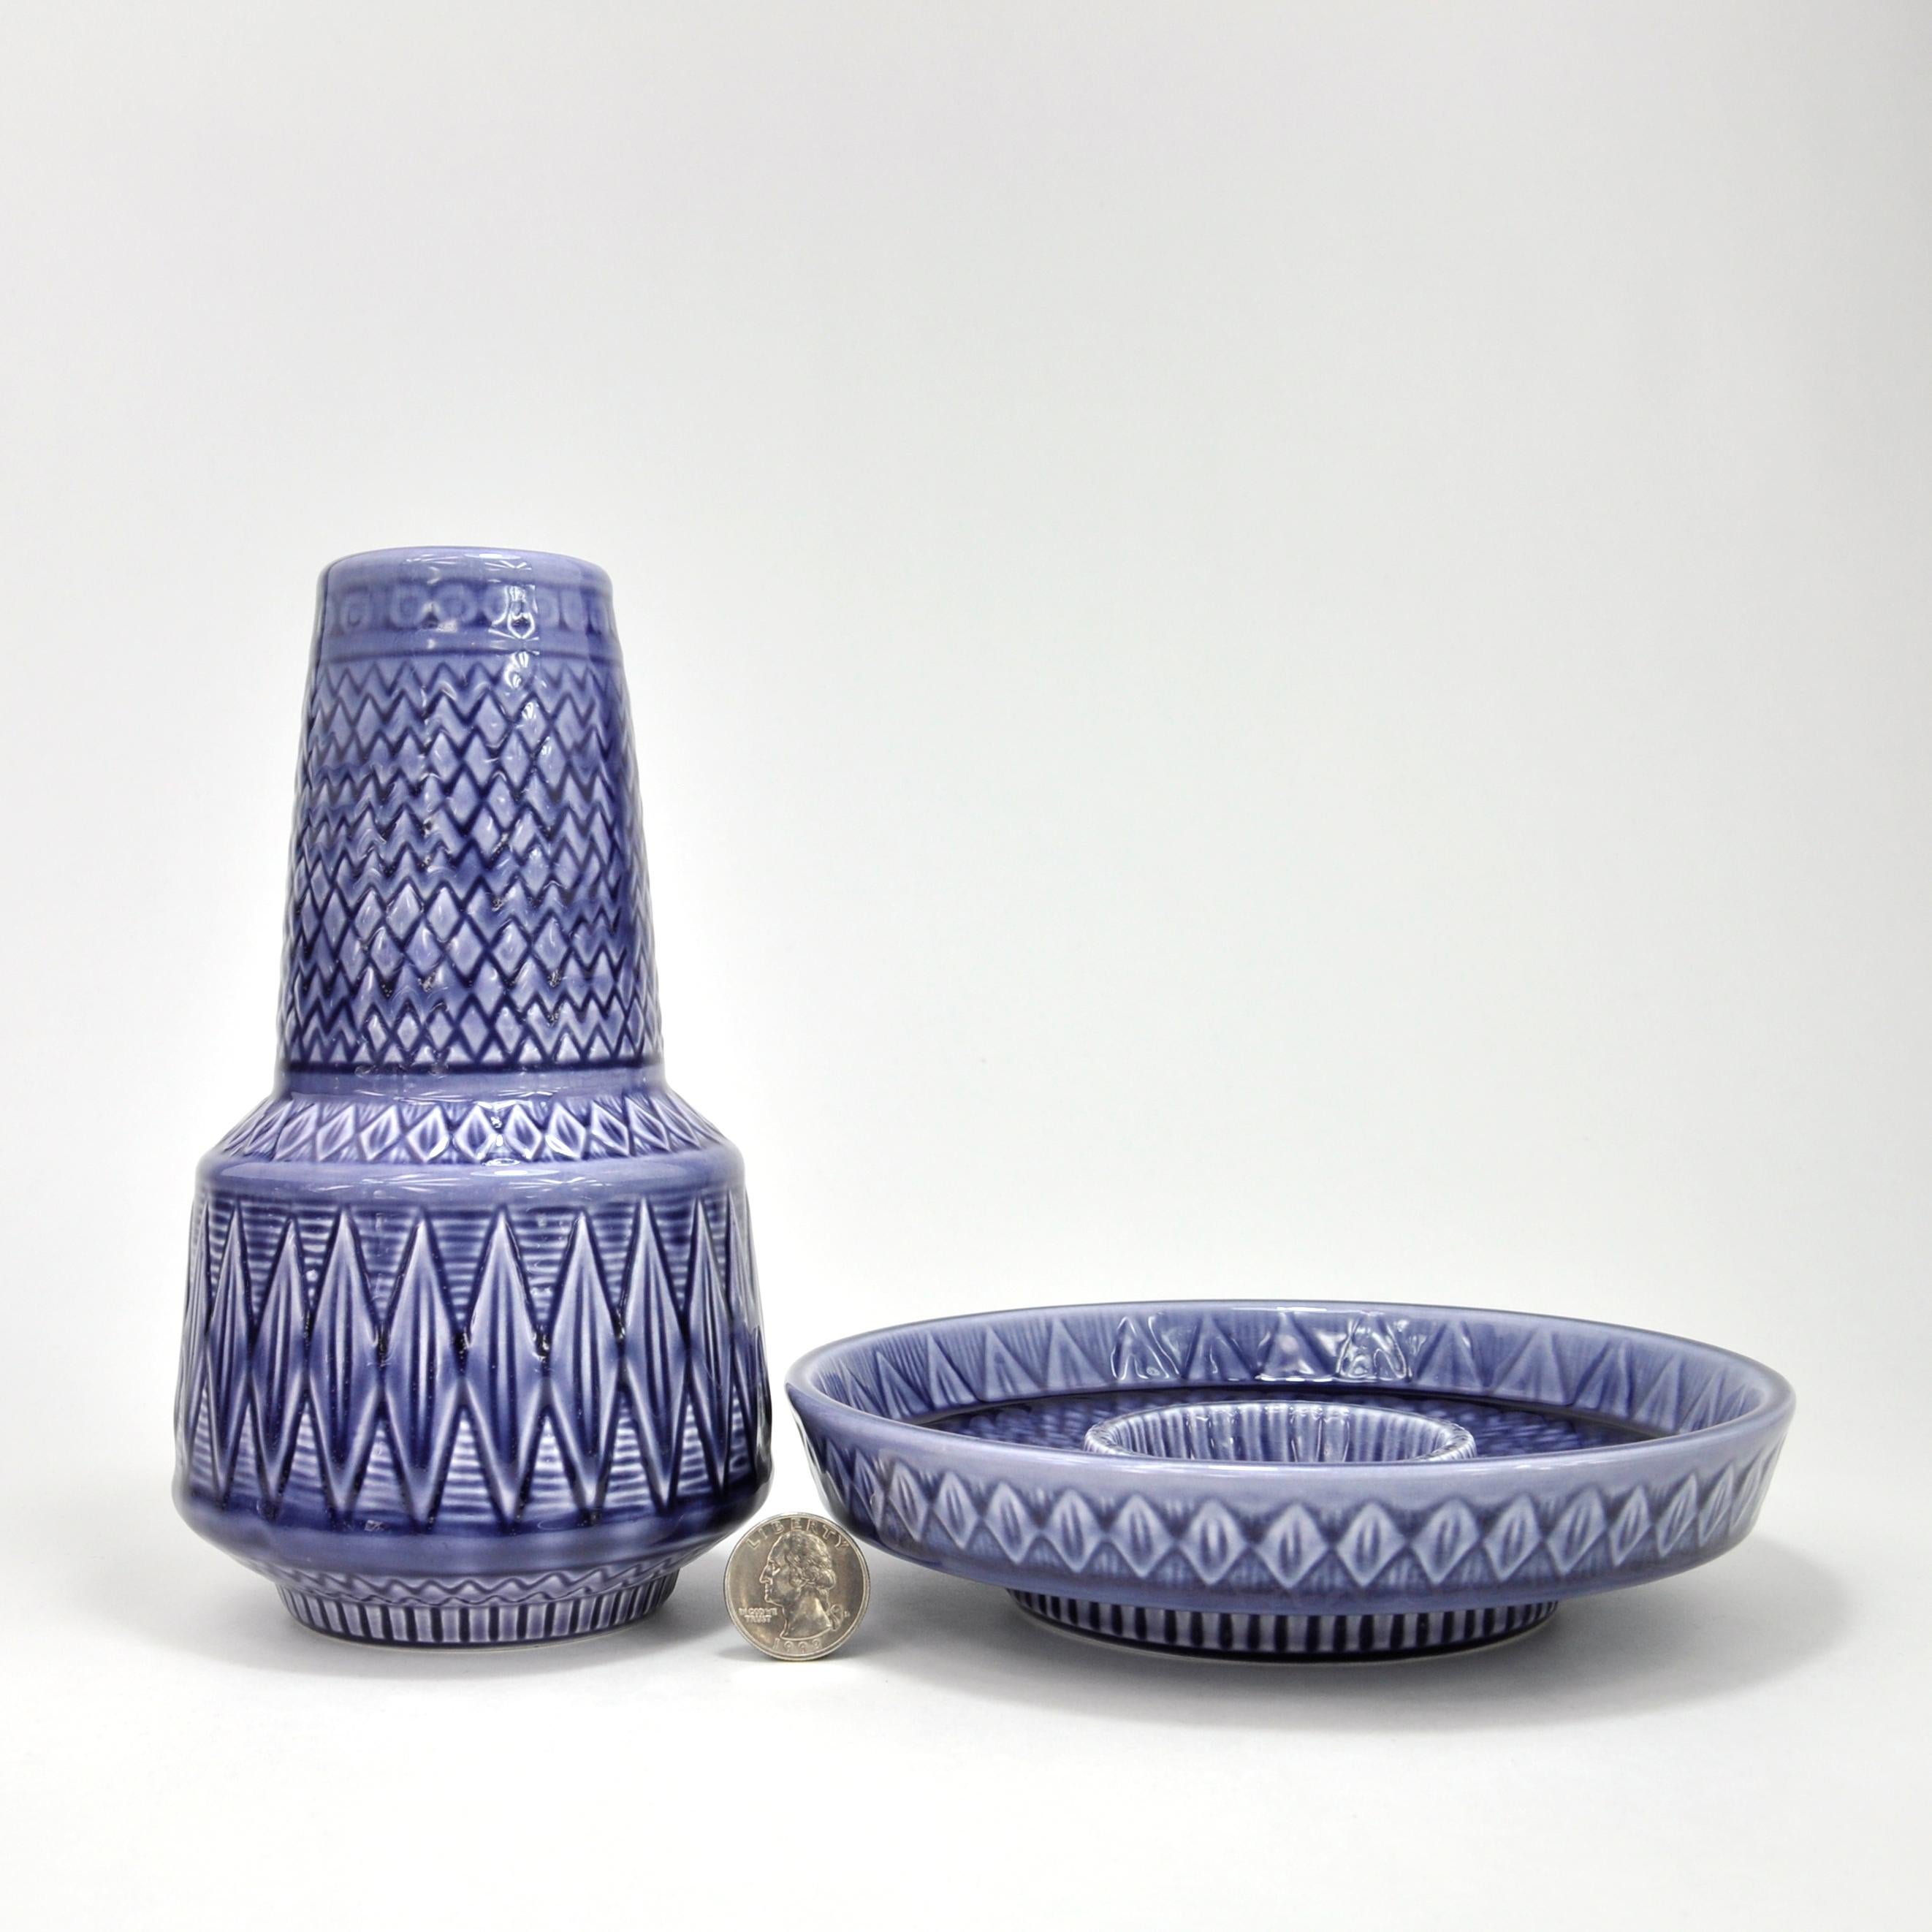 Gunnar Nylund ist einer der angesehensten schwedischen Keramikdesigner des 20. Jahrhunderts. Nylund begann seine Karriere in der Porzellanfabrik Bing & Grondahl in Kopenhagen (1925-1929), bevor er 1929 zusammen mit Nathalie Krebs die Saxbo-Werkstatt